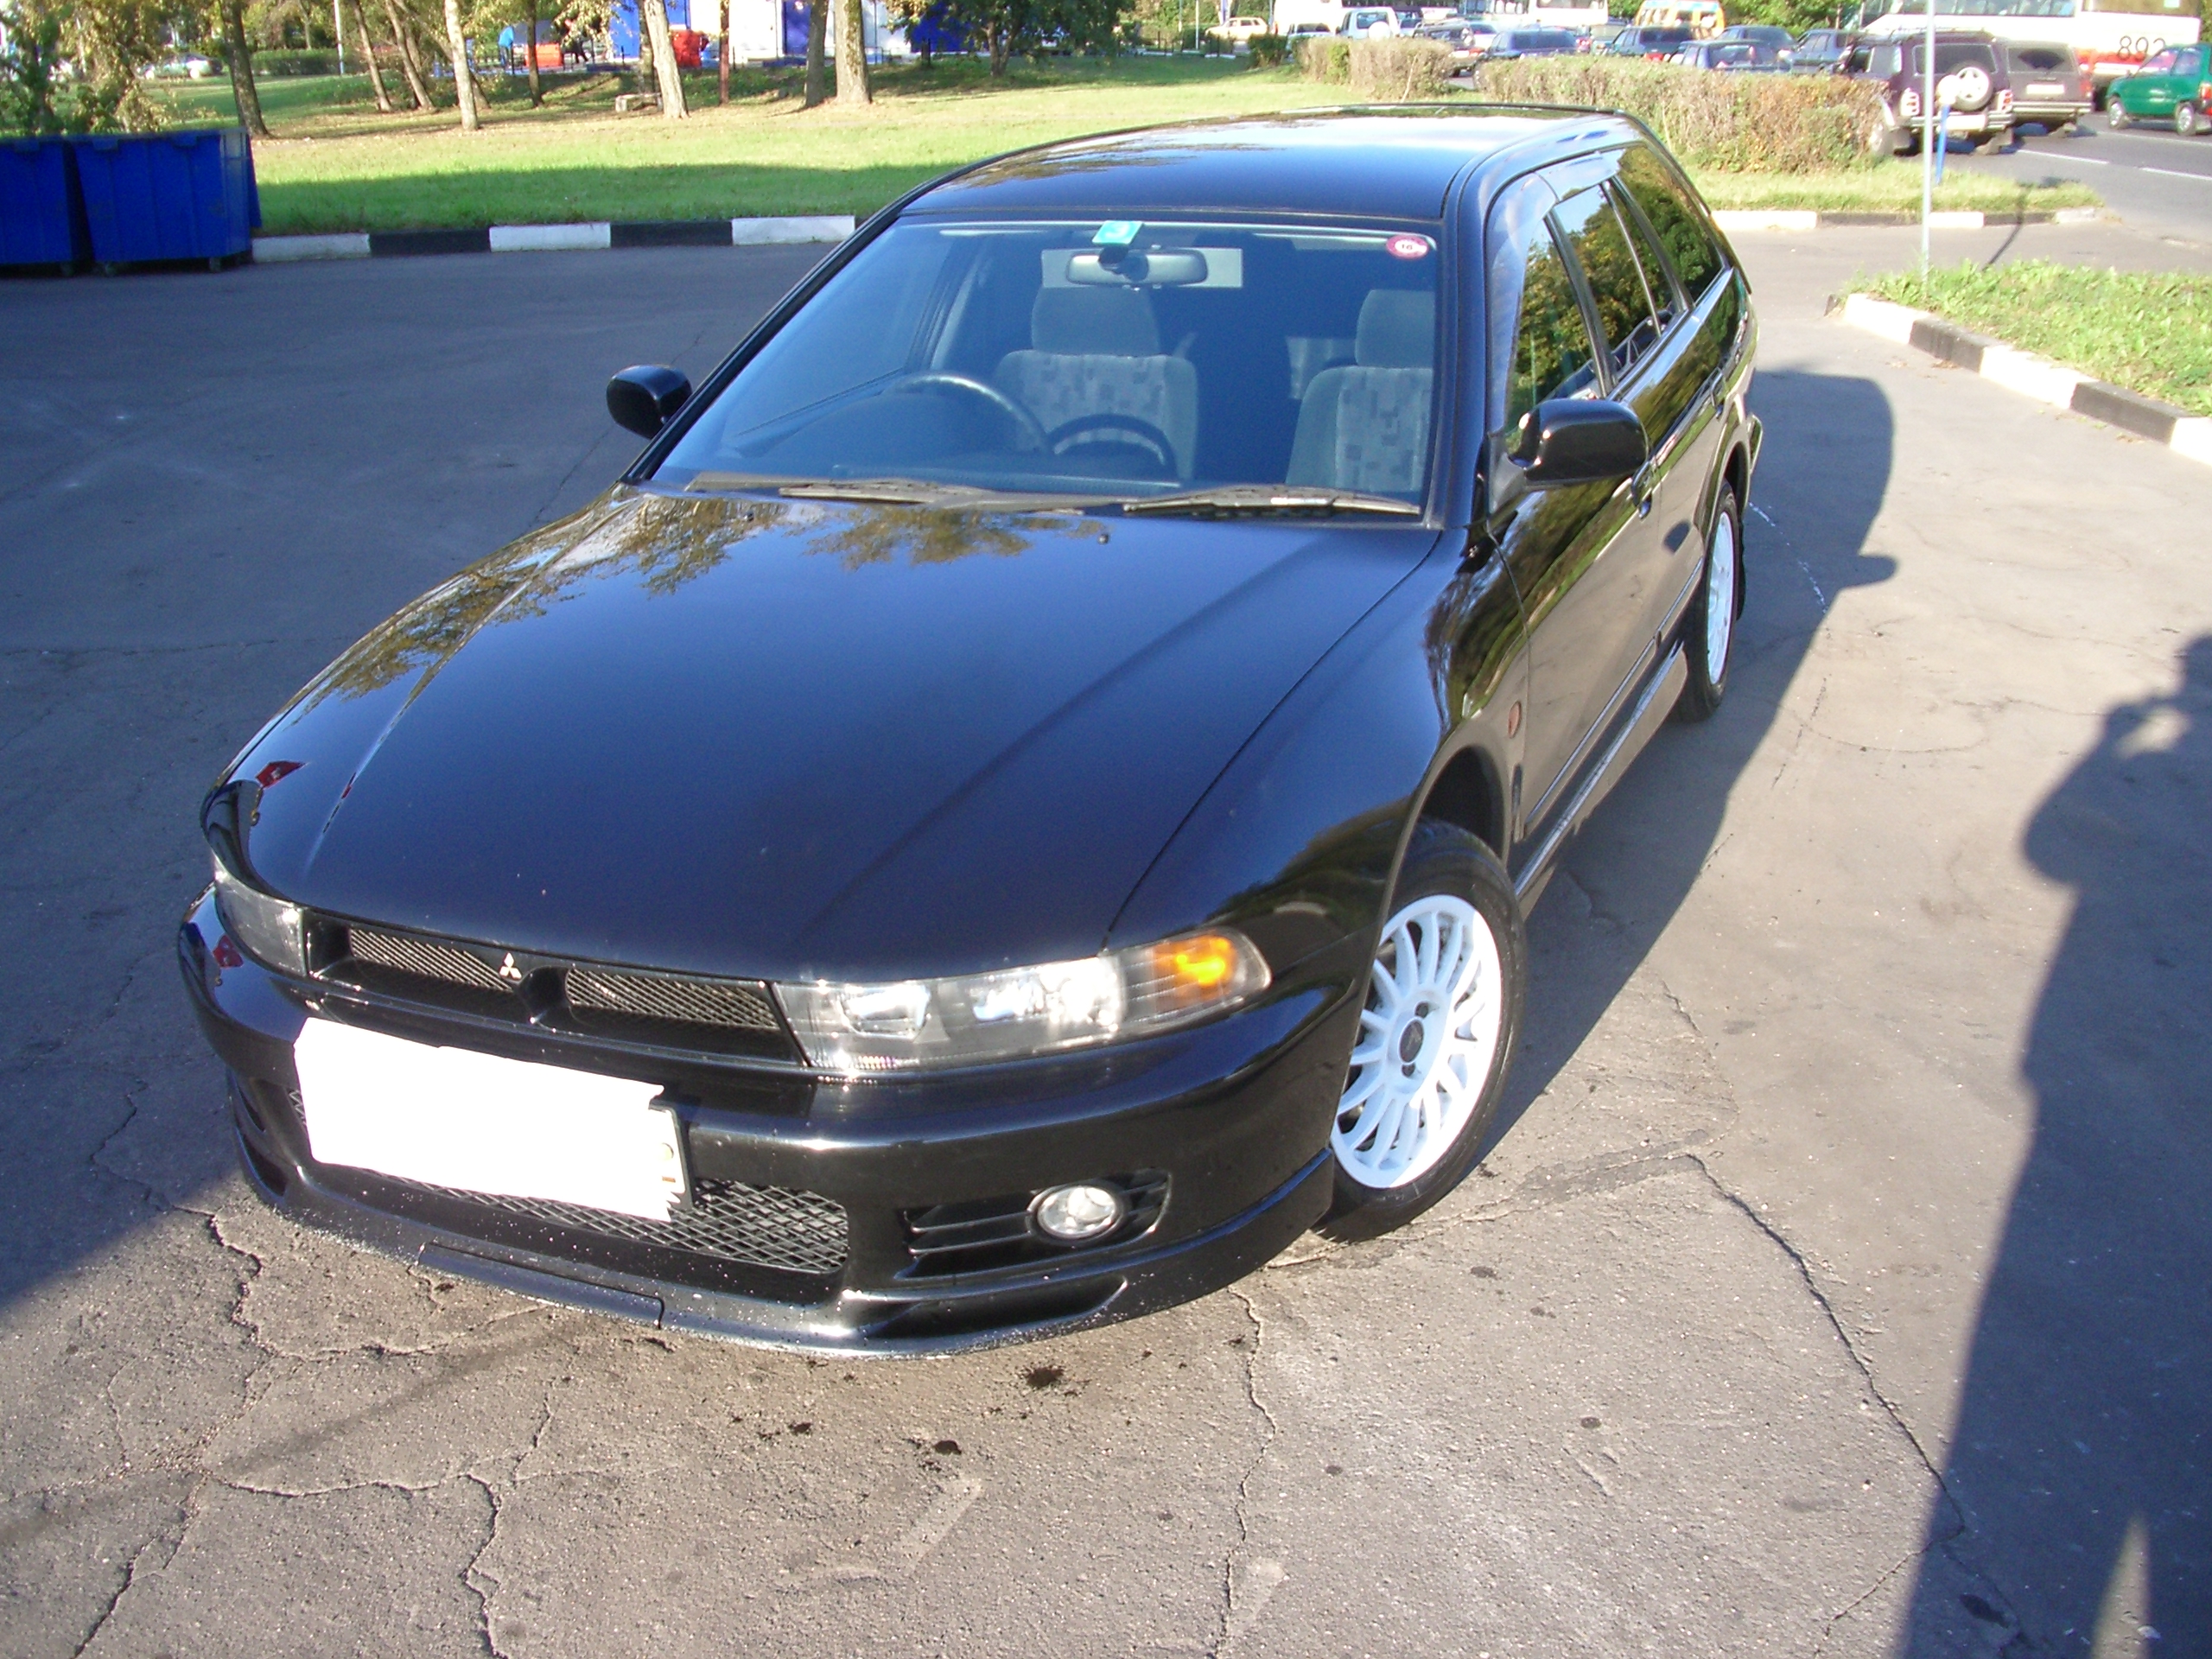 1999 Mitsubishi Galant